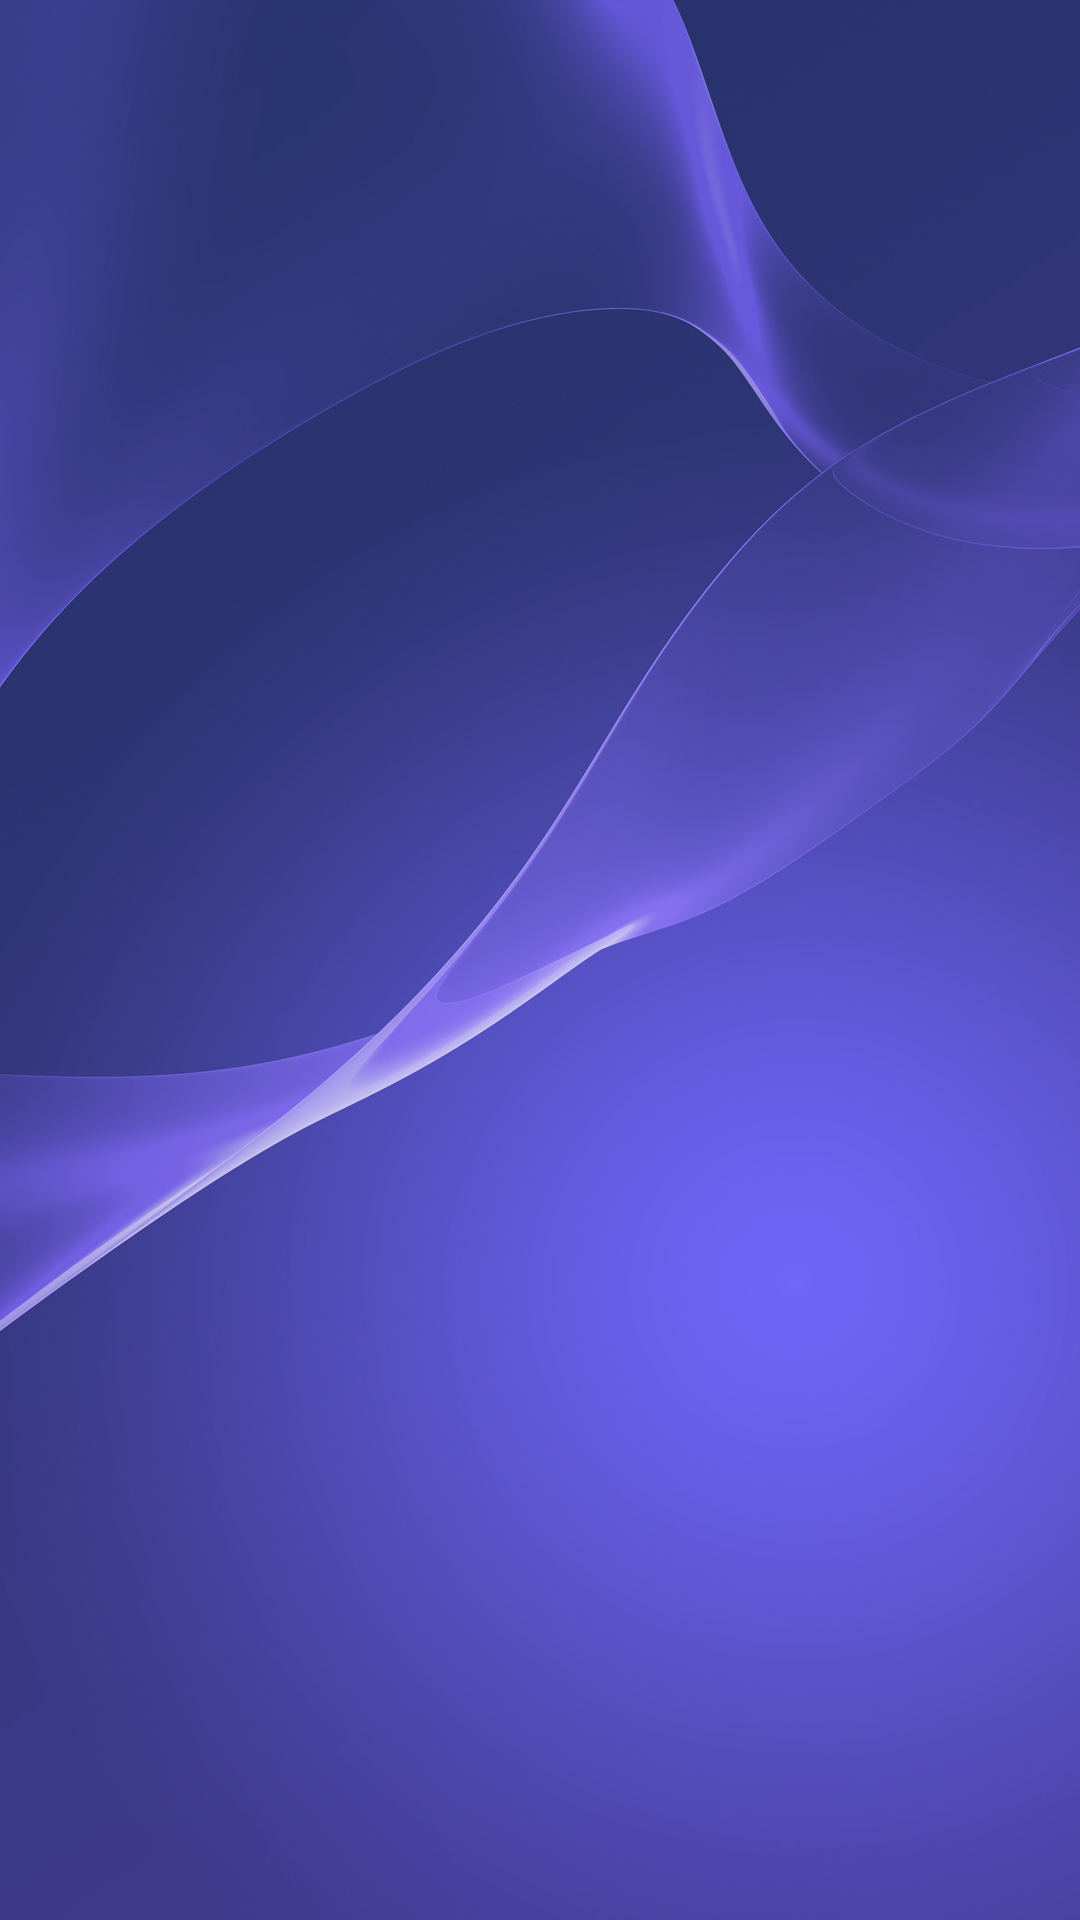 fond d'écran sony xperia hd pour mobile,bleu,violet,violet,lilas,bleu électrique